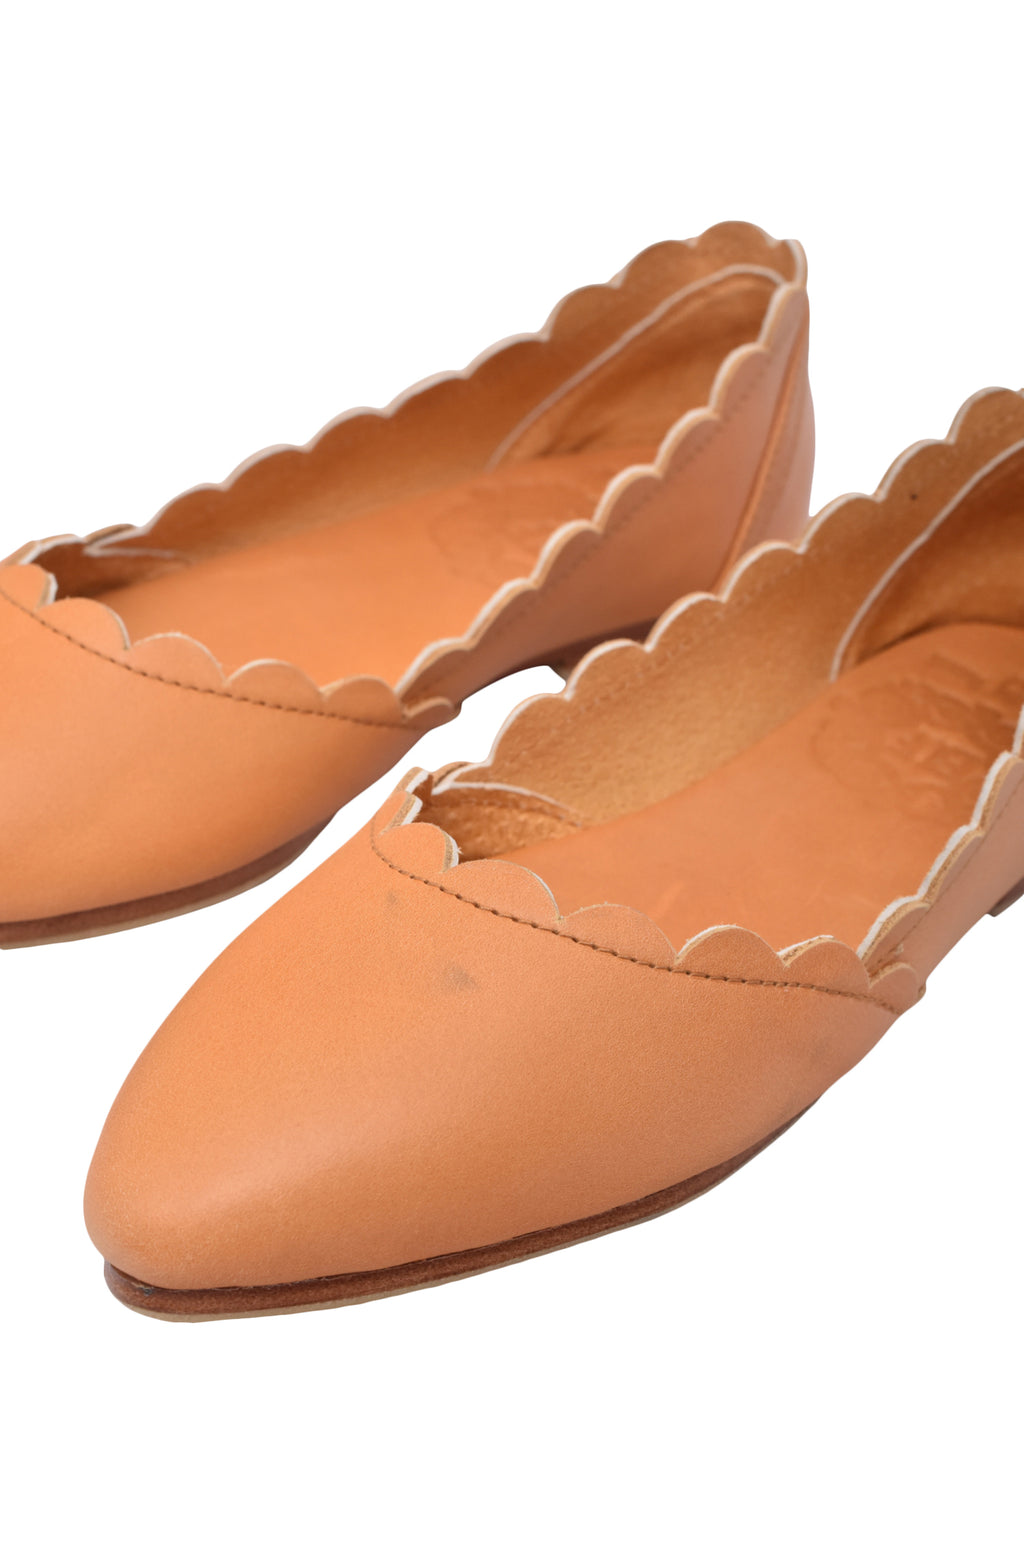 Valentina Leather Ballet Flats (*Sz. 5.5)